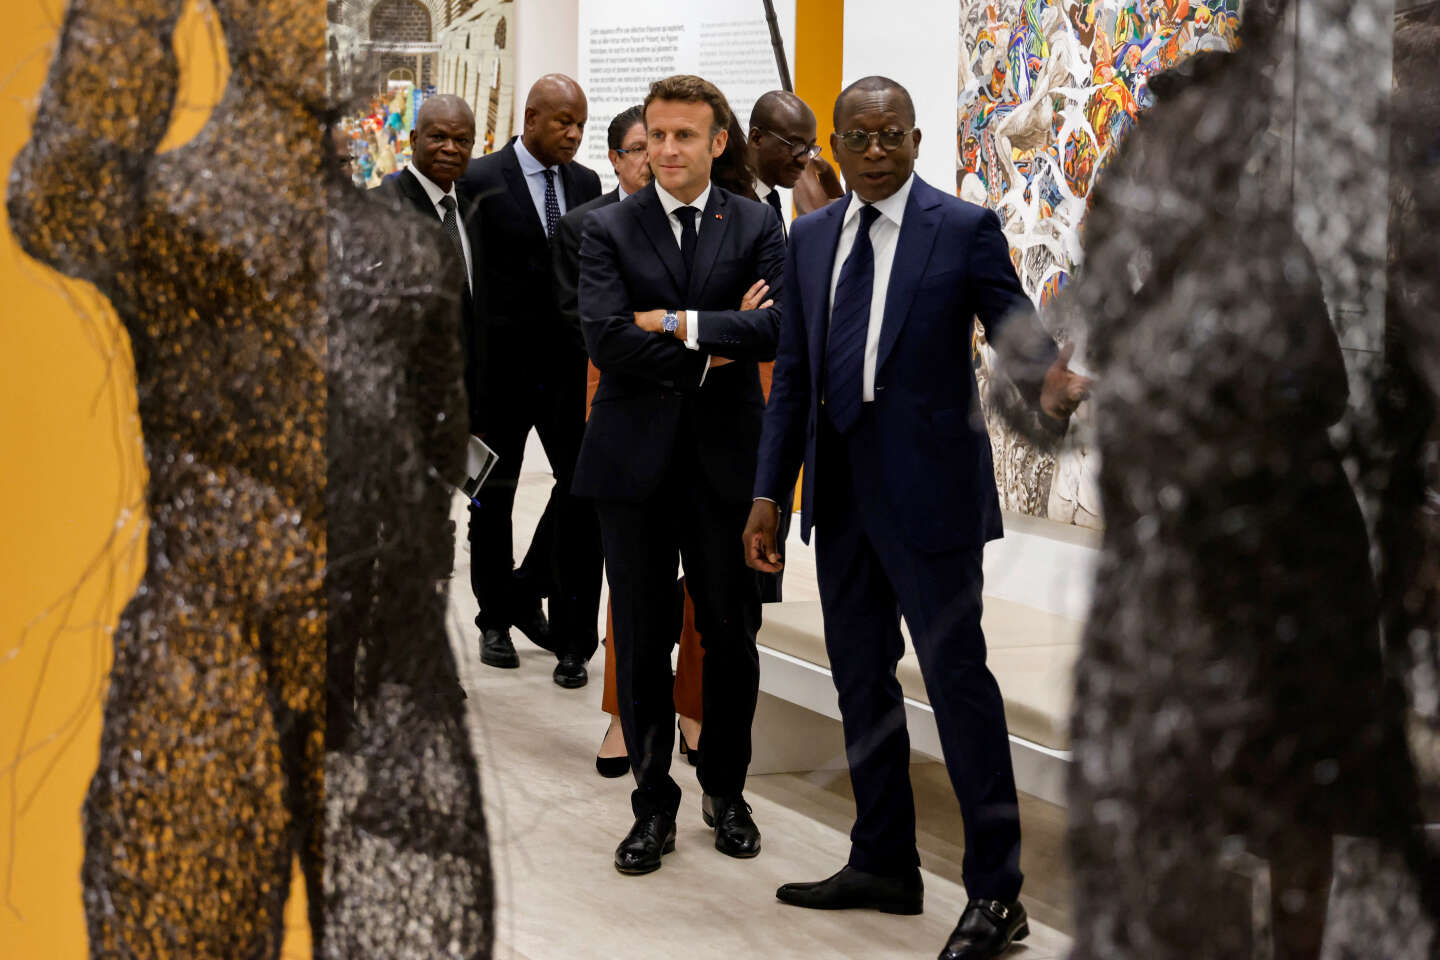 Les nouveaux chemins de la diplomatie culturelle française en Afrique